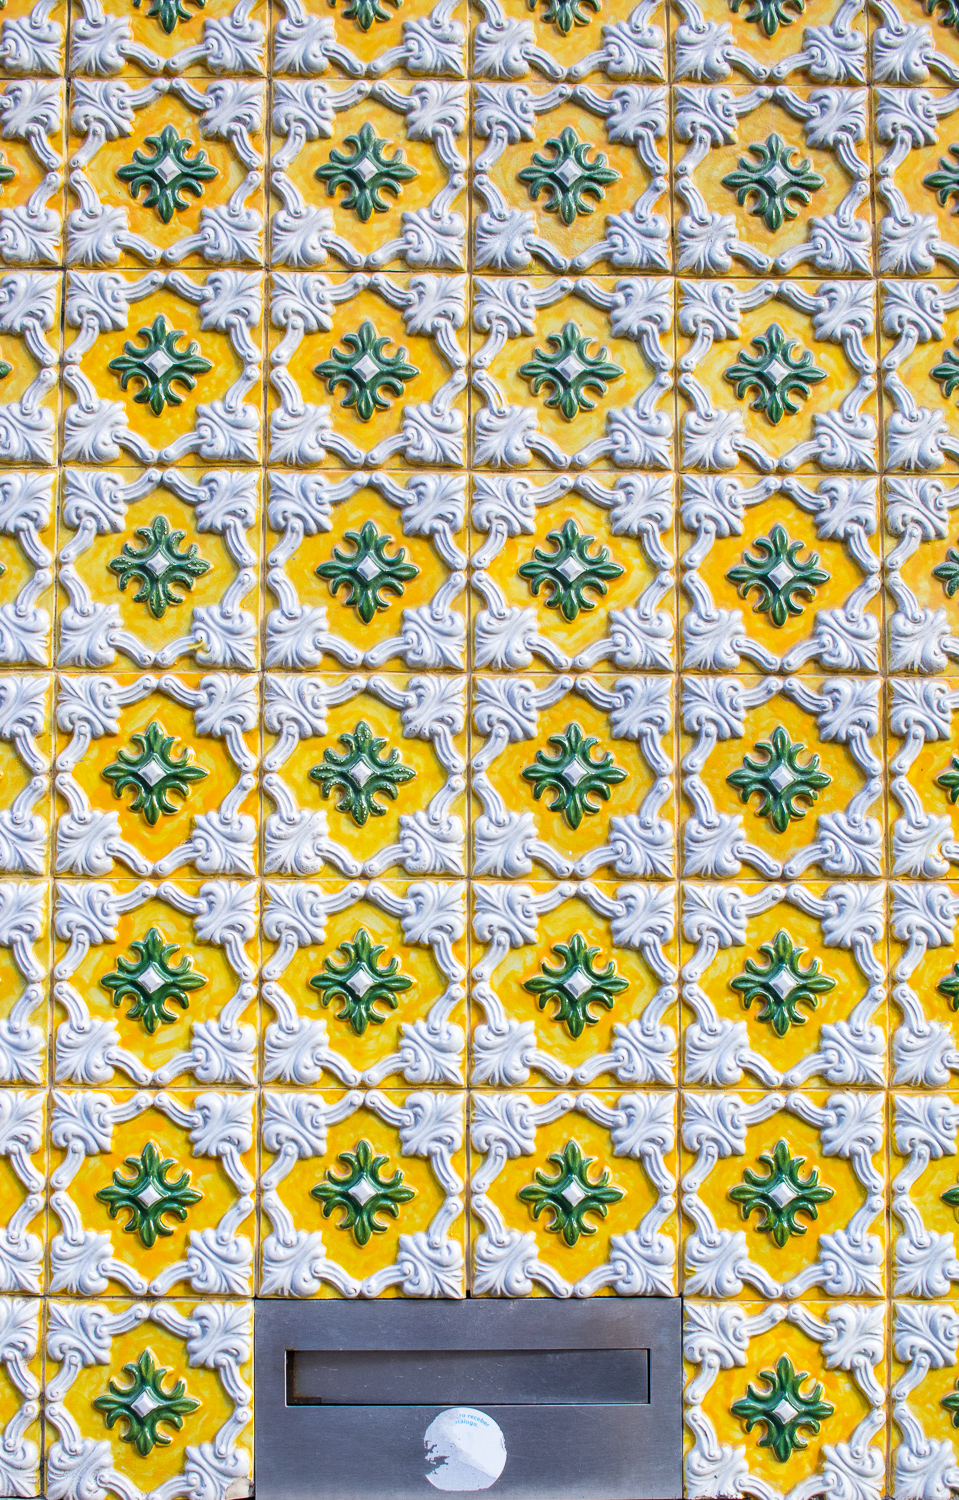 Porto azulejos tiles